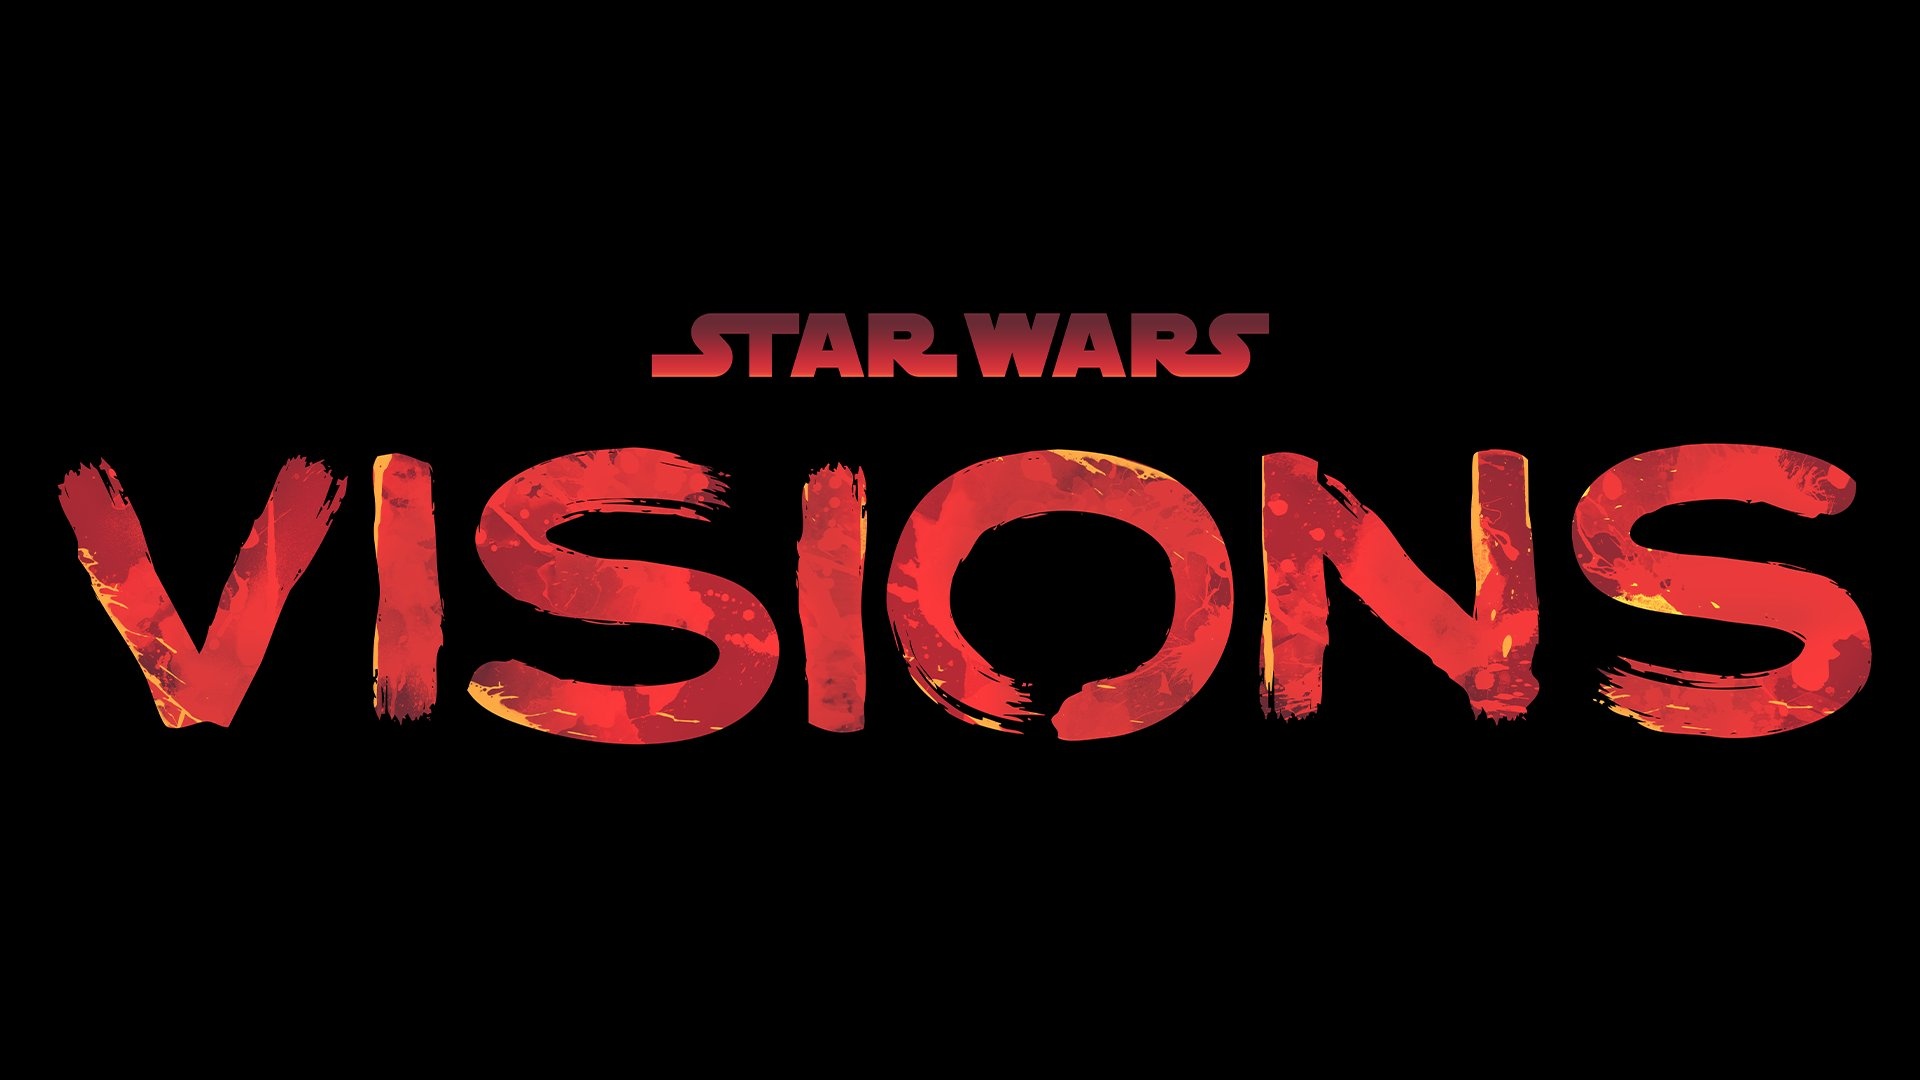 Новая порция антологии "Star Wars: Visions" выйдет весной 2023 года....